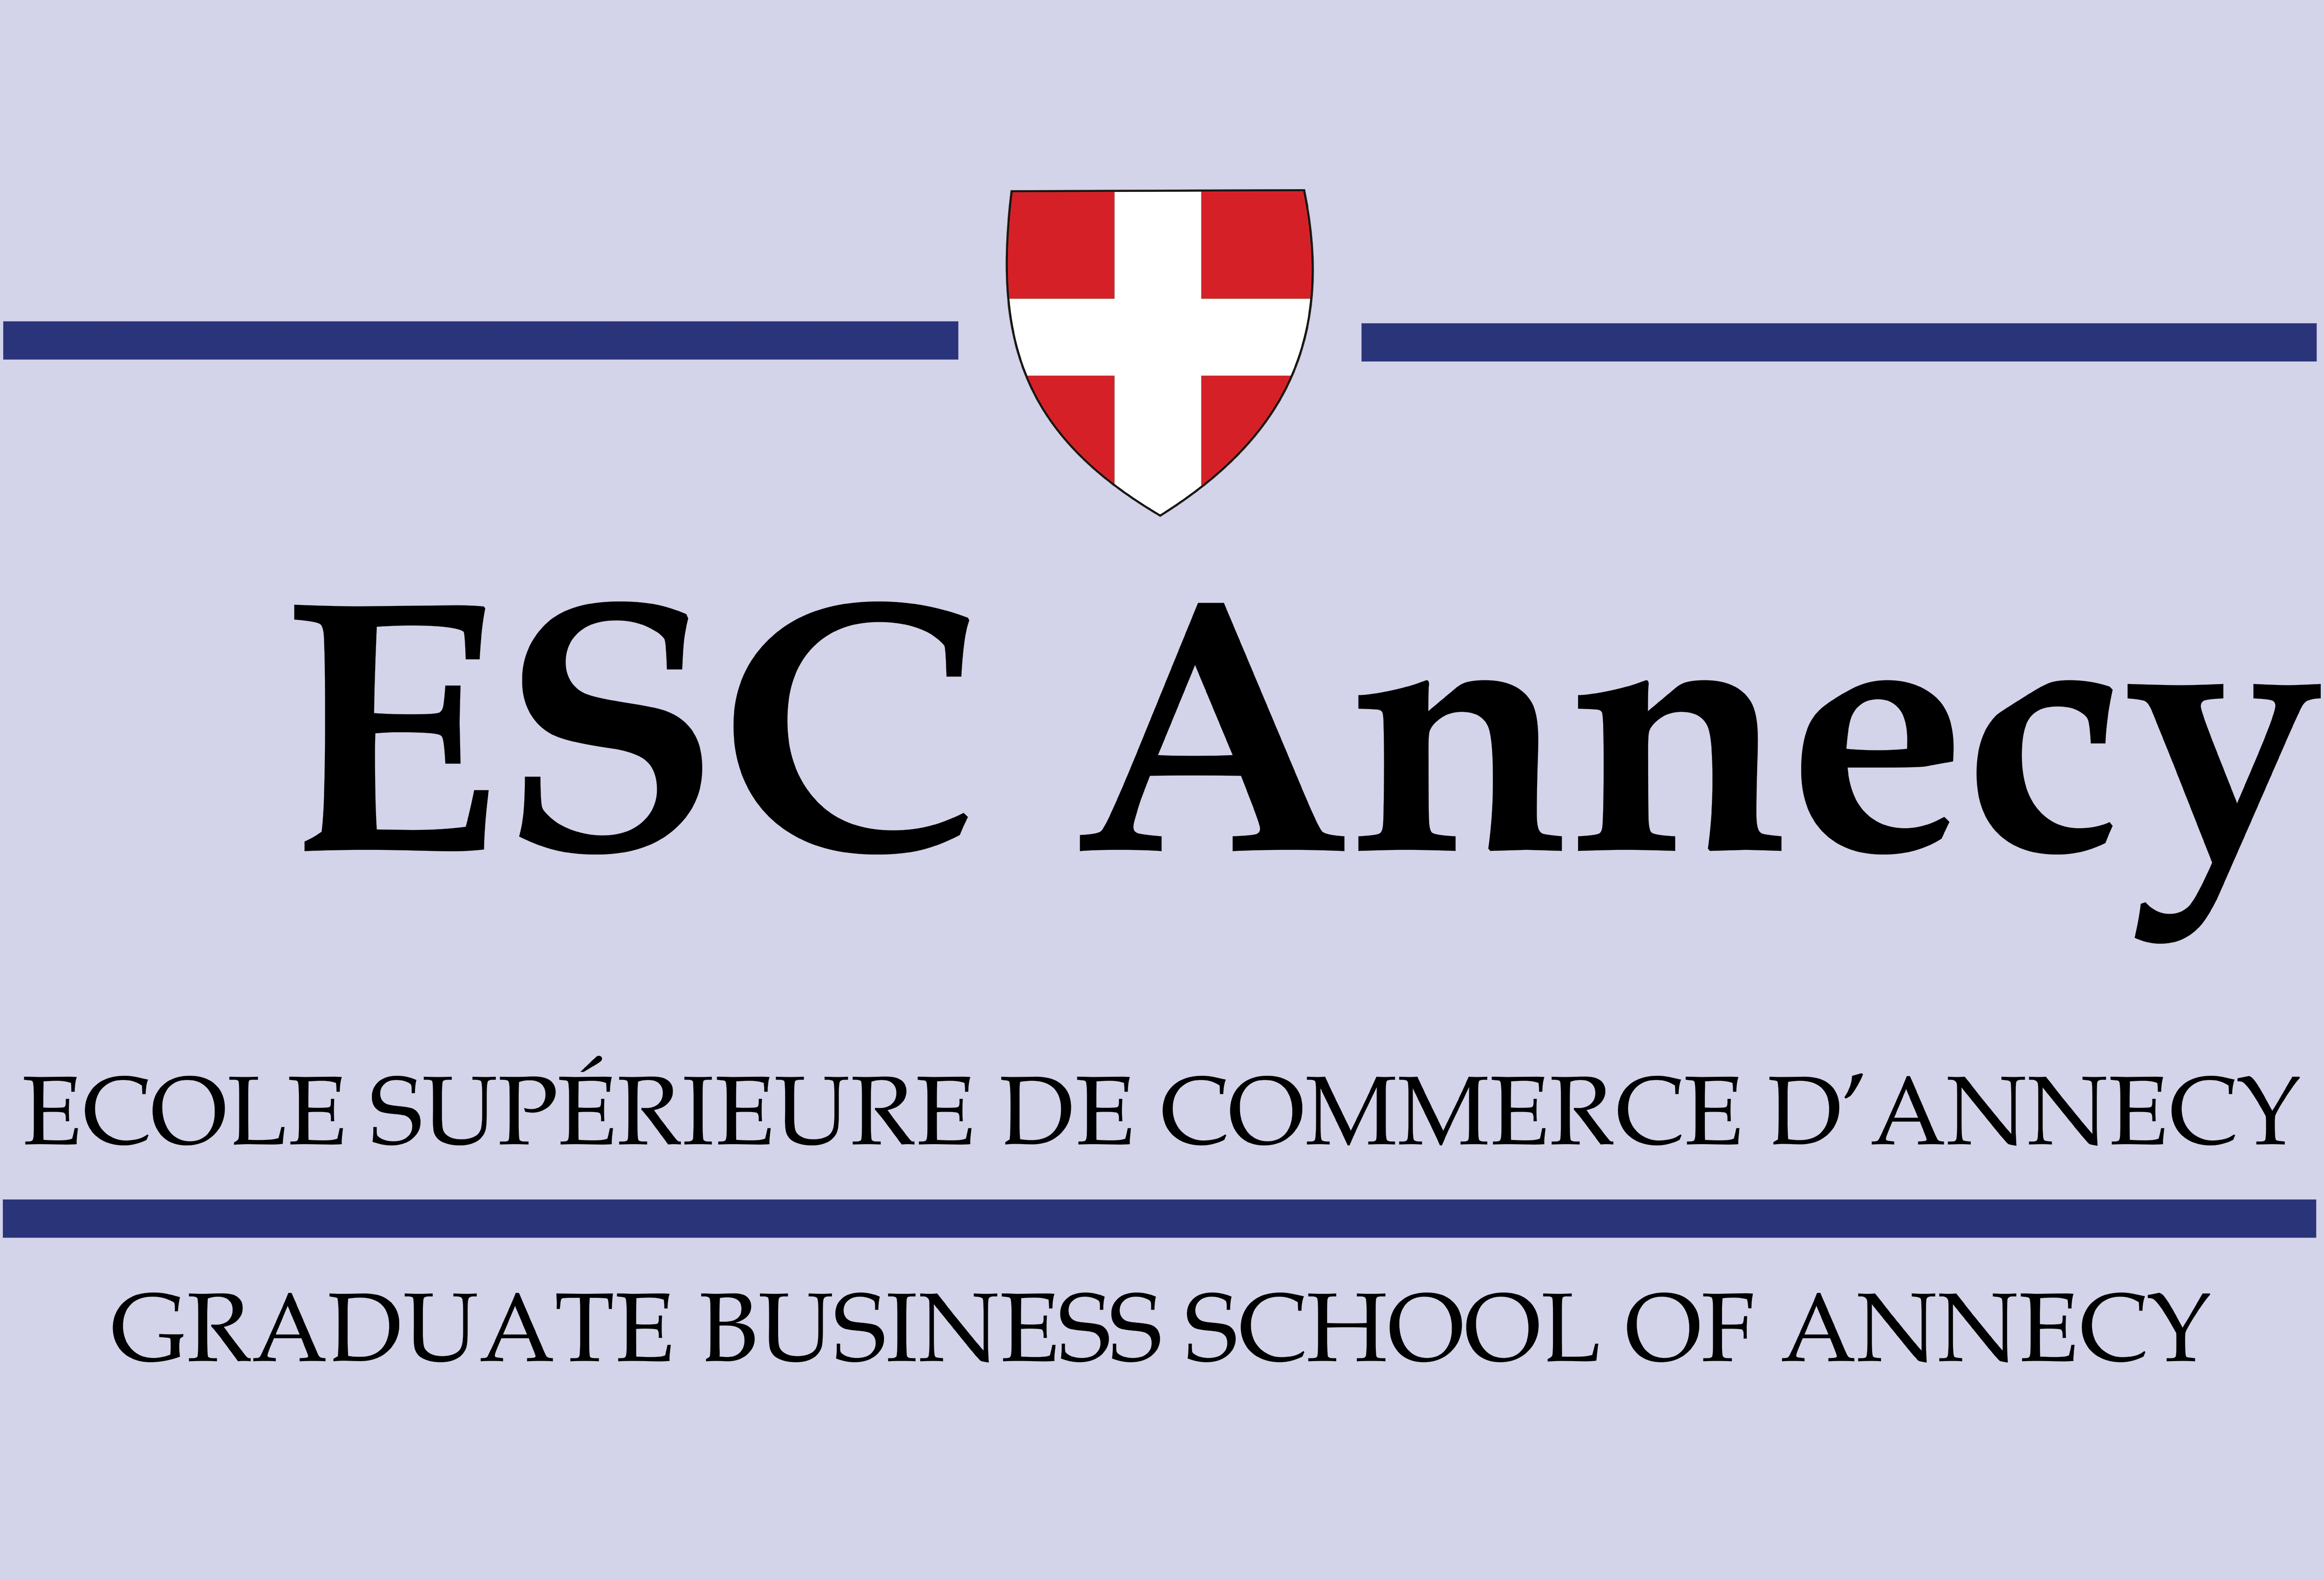 ESC Annecy - Ecole Supérieure de Commerce d'Annecy